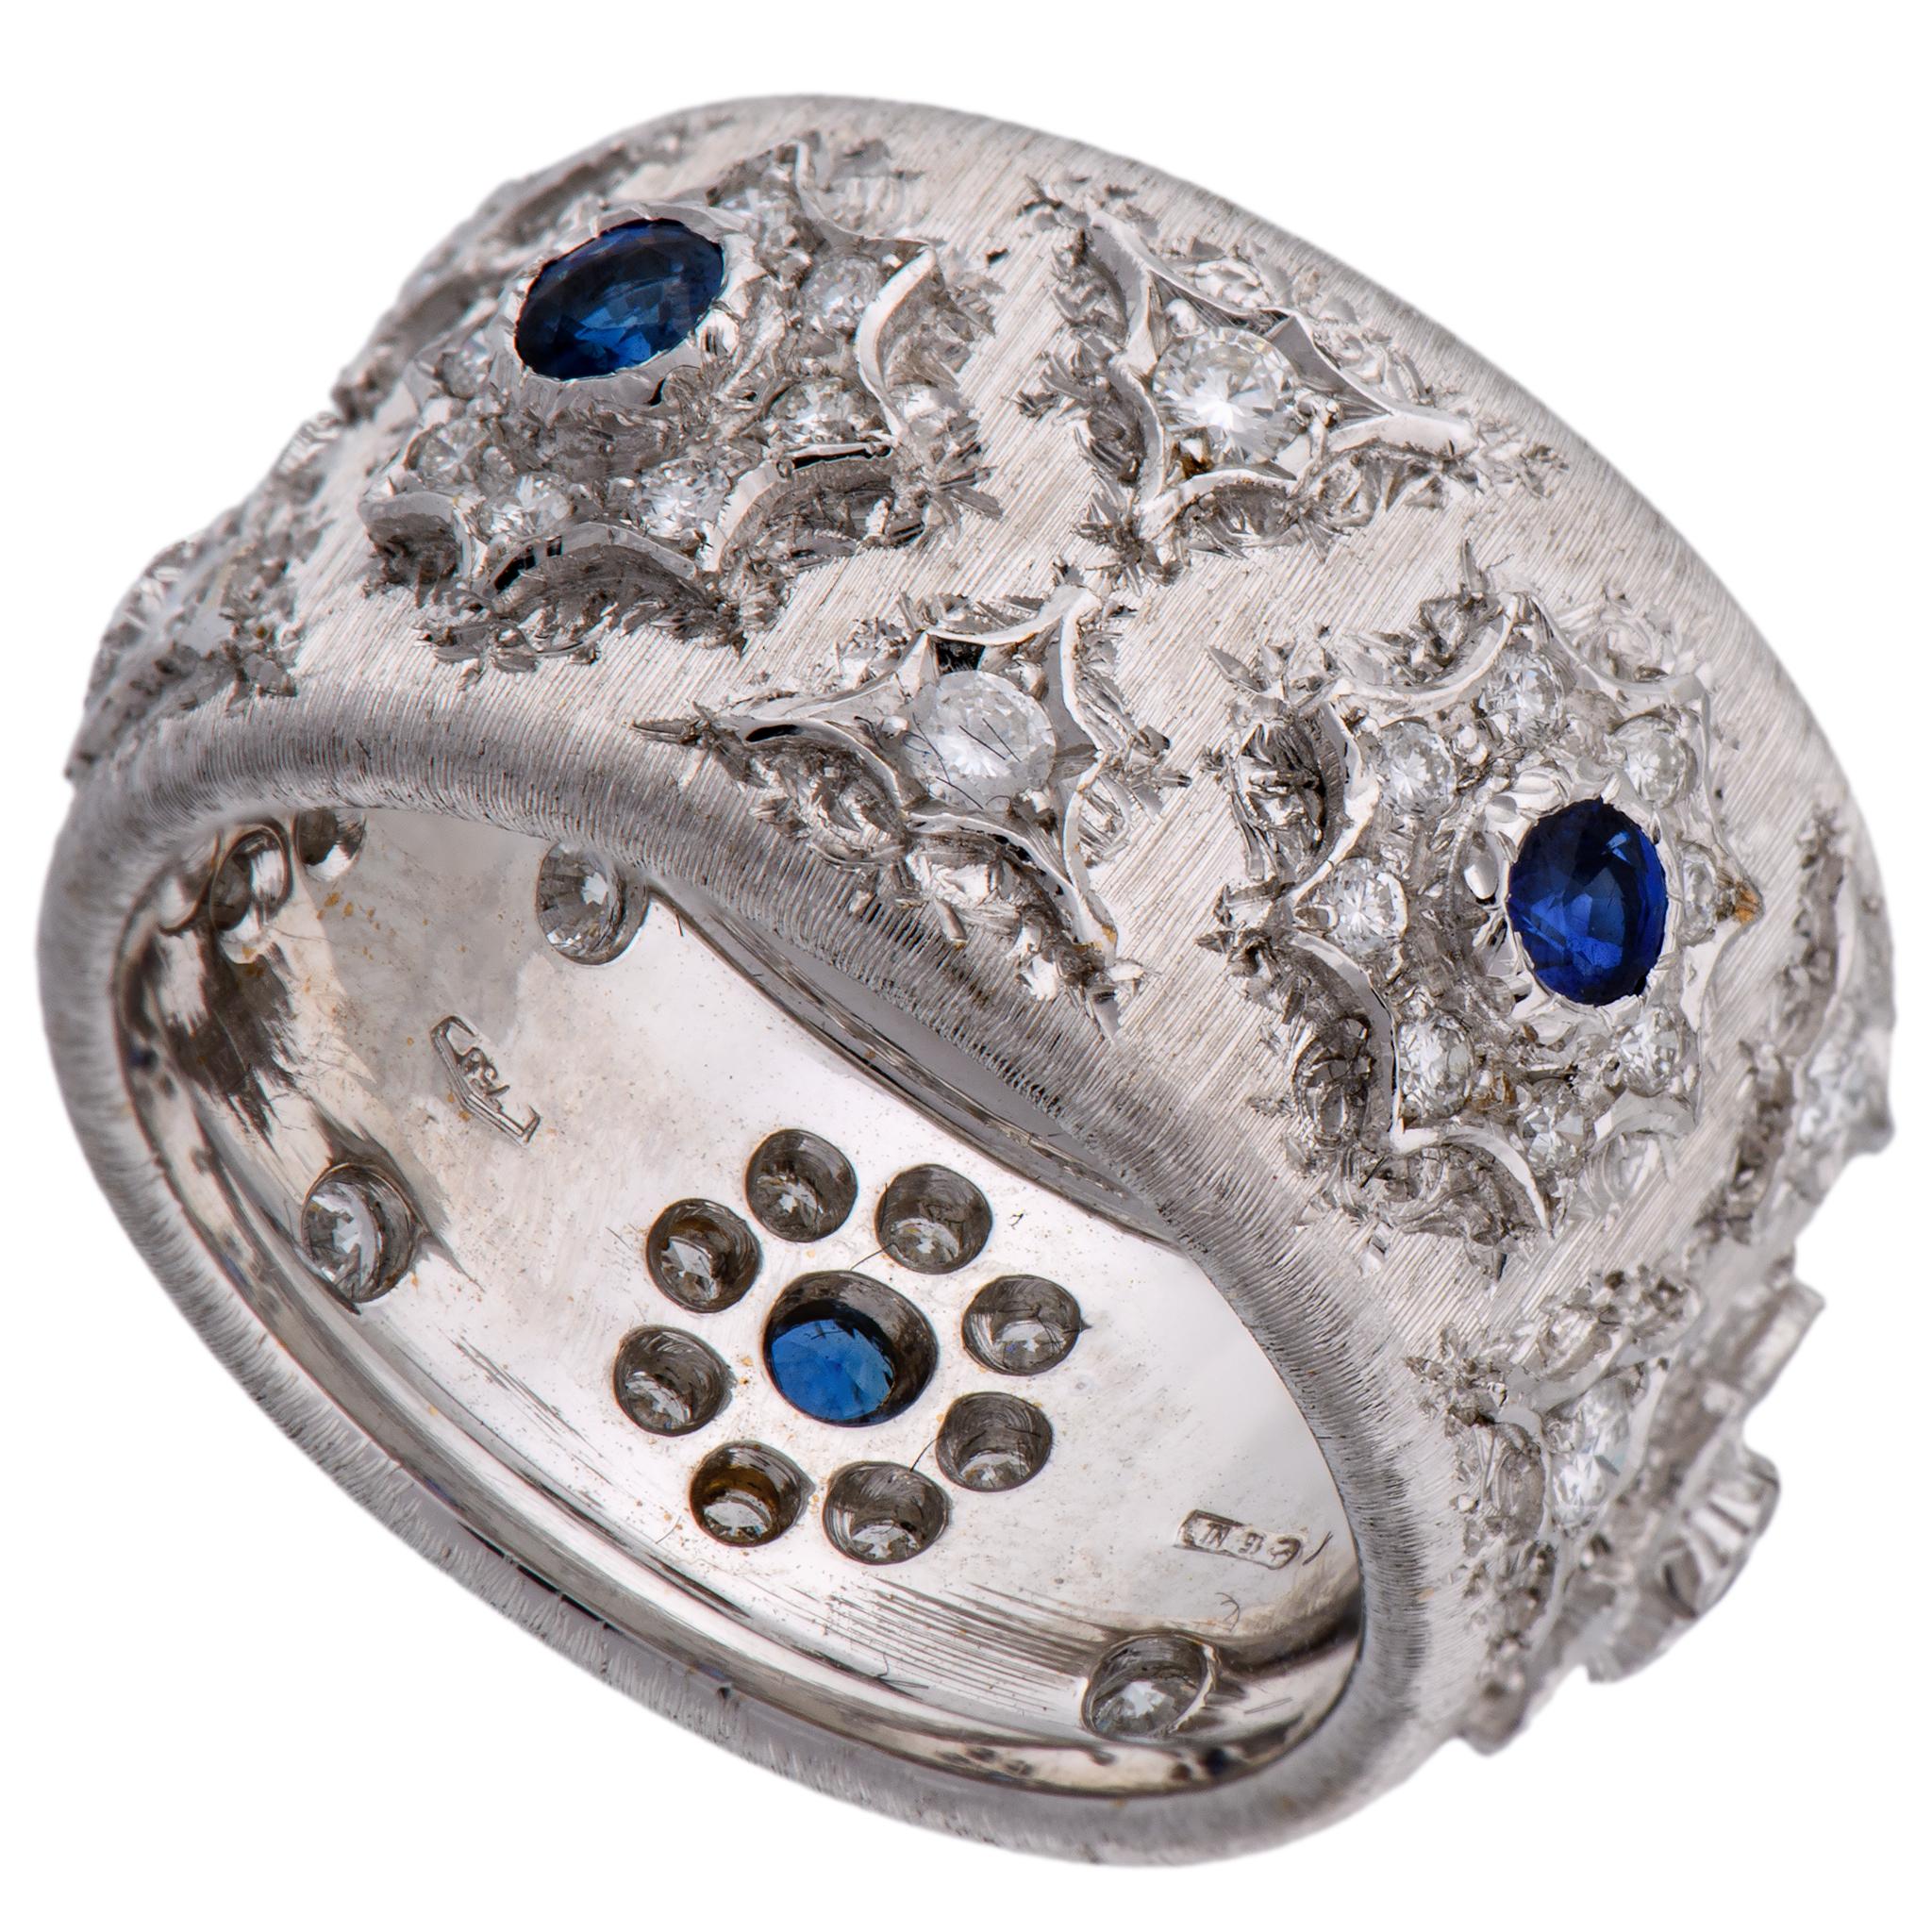 Mario Buccellati 18 Karat White Gold Sapphire Ring 1